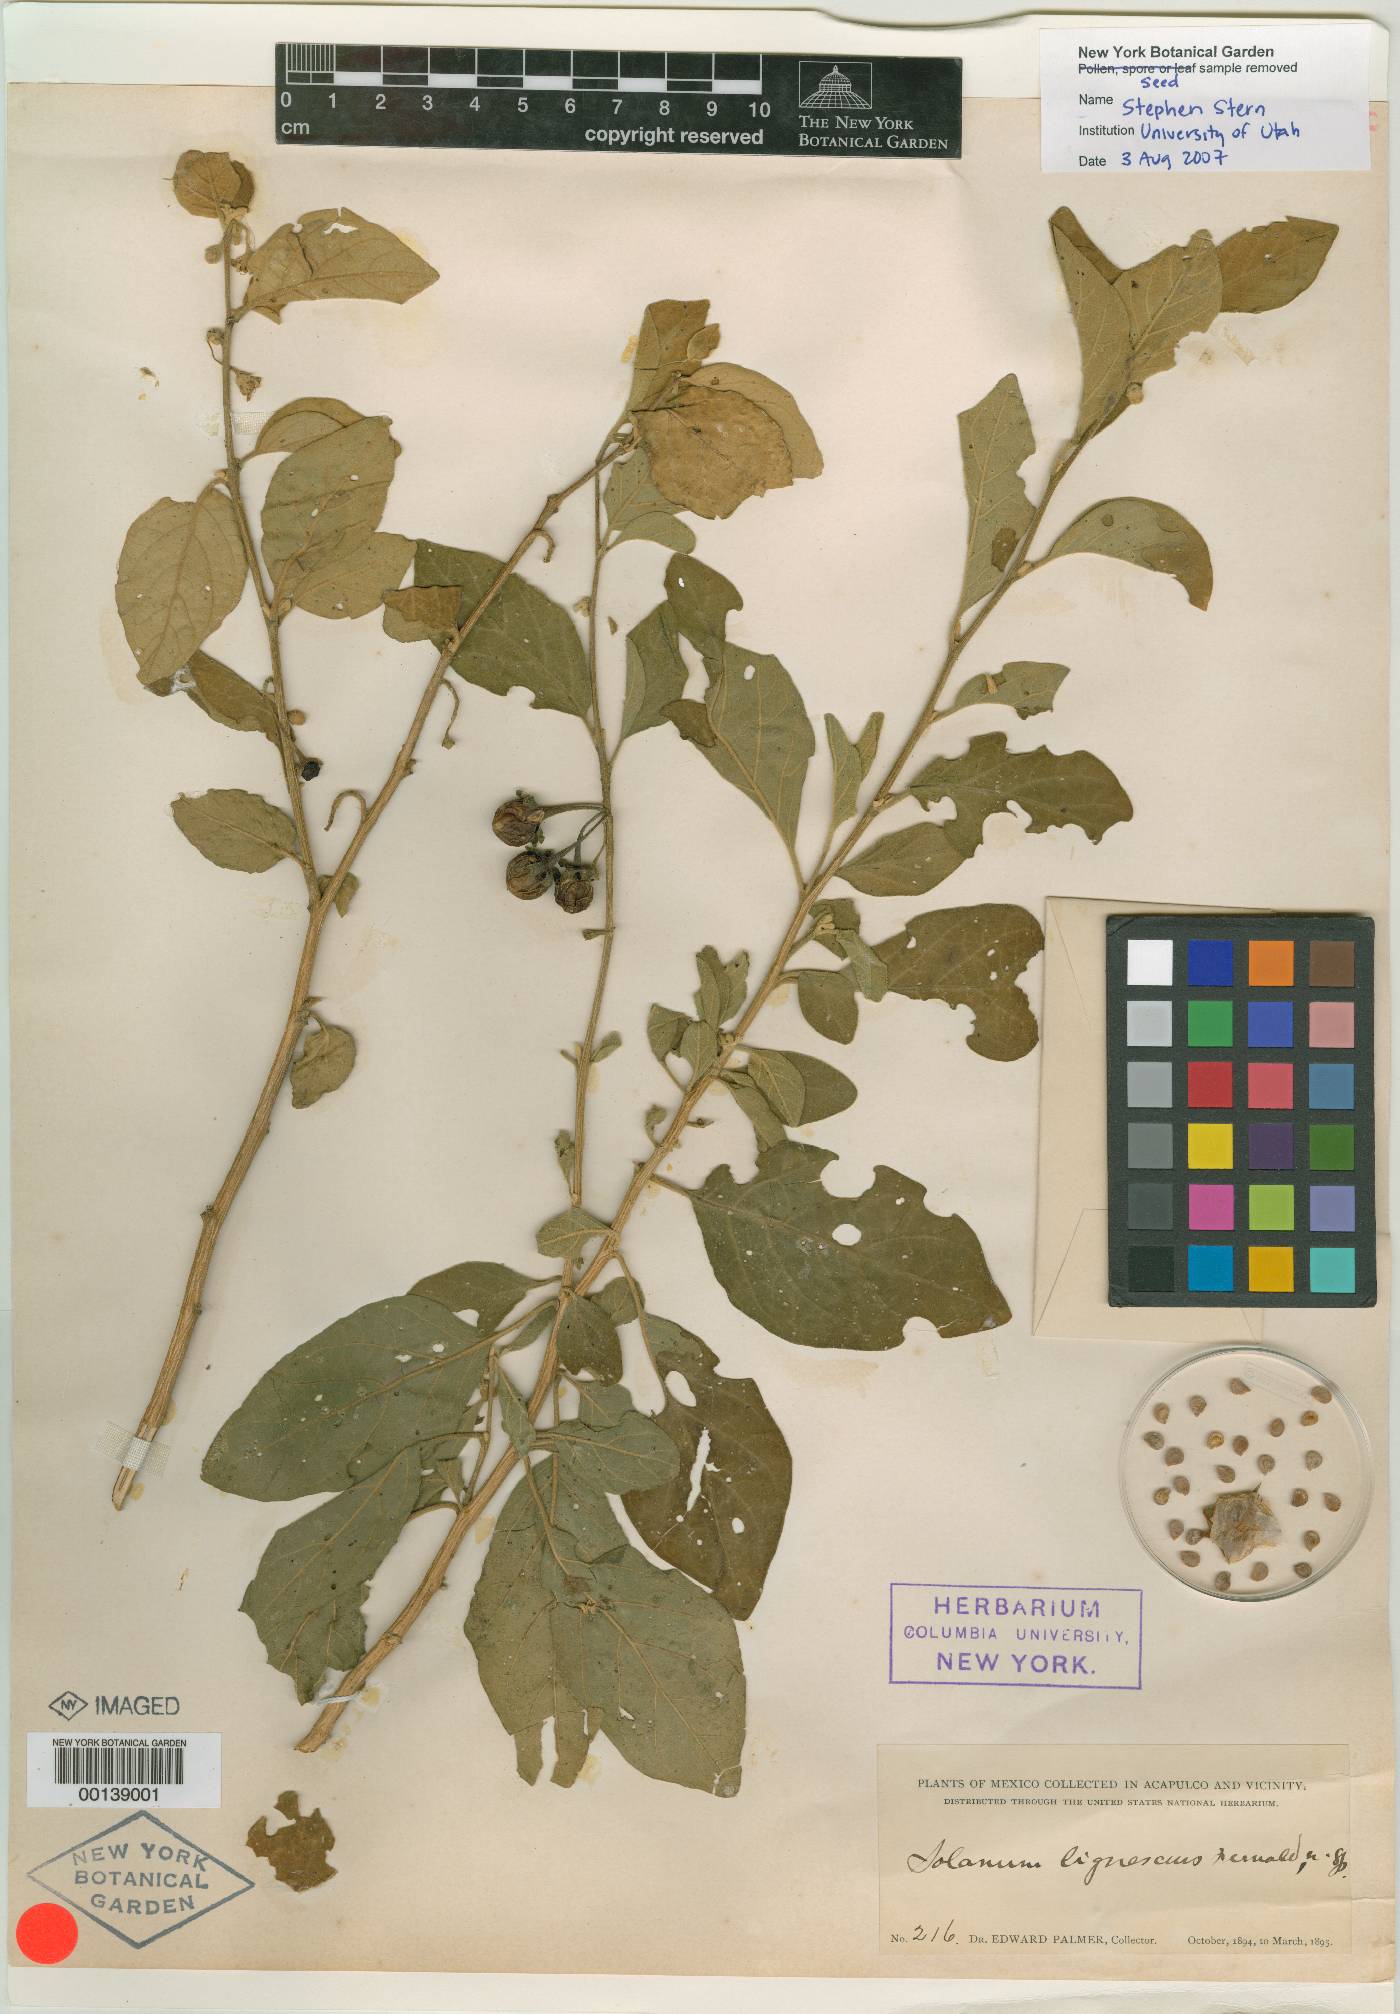 Solanum lignescens image